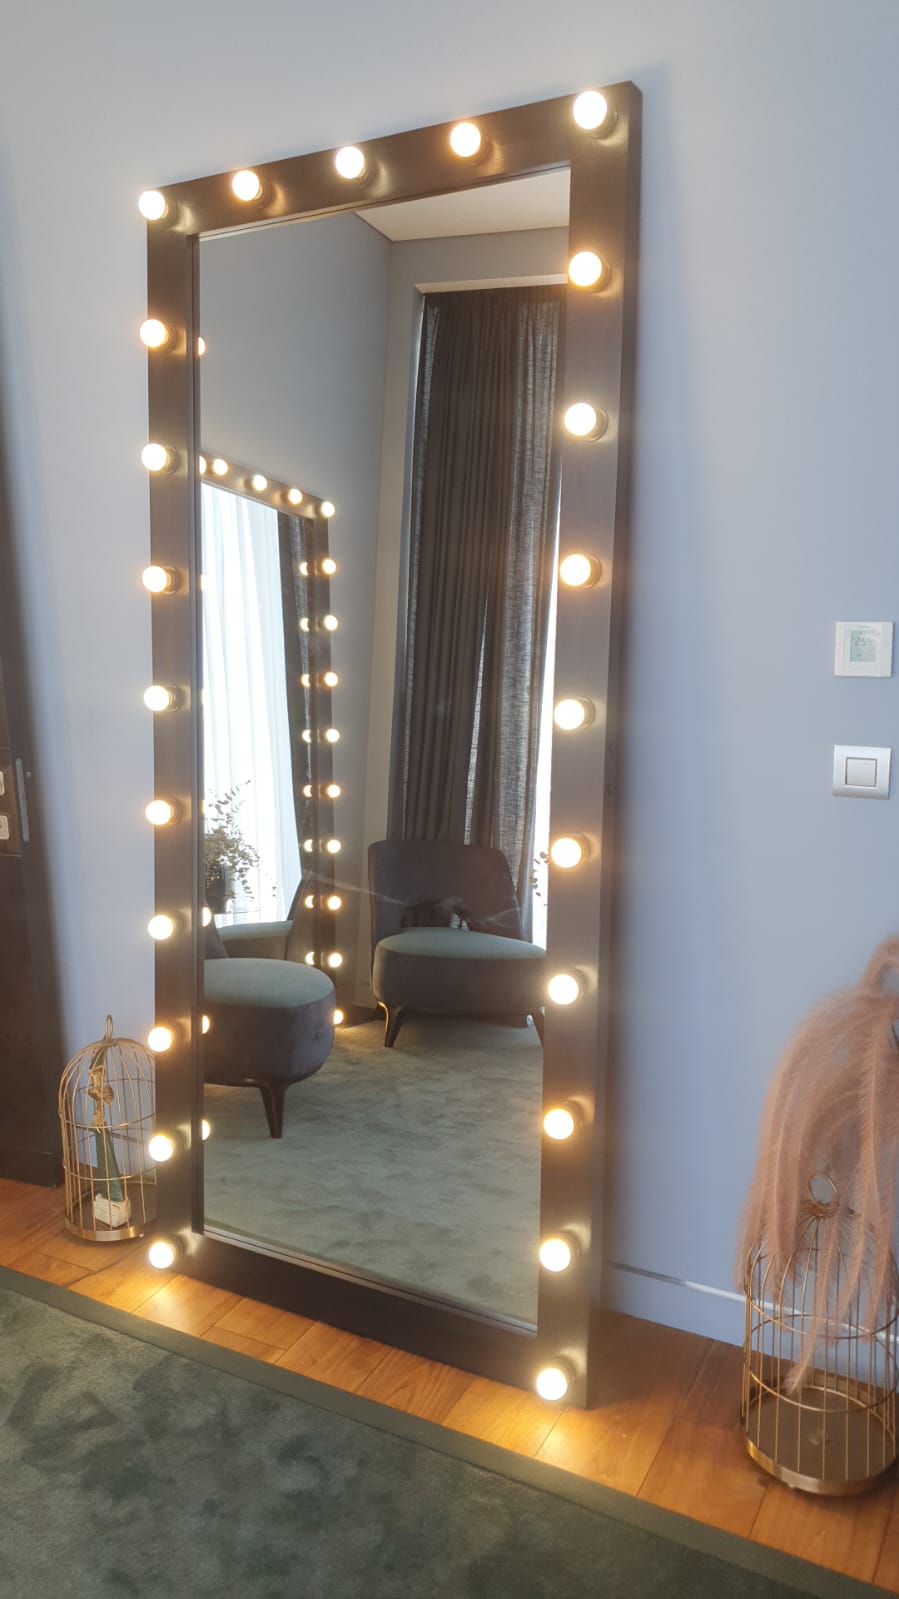 напольное зеркало в раме с подсветкой лампочками буквой "П"